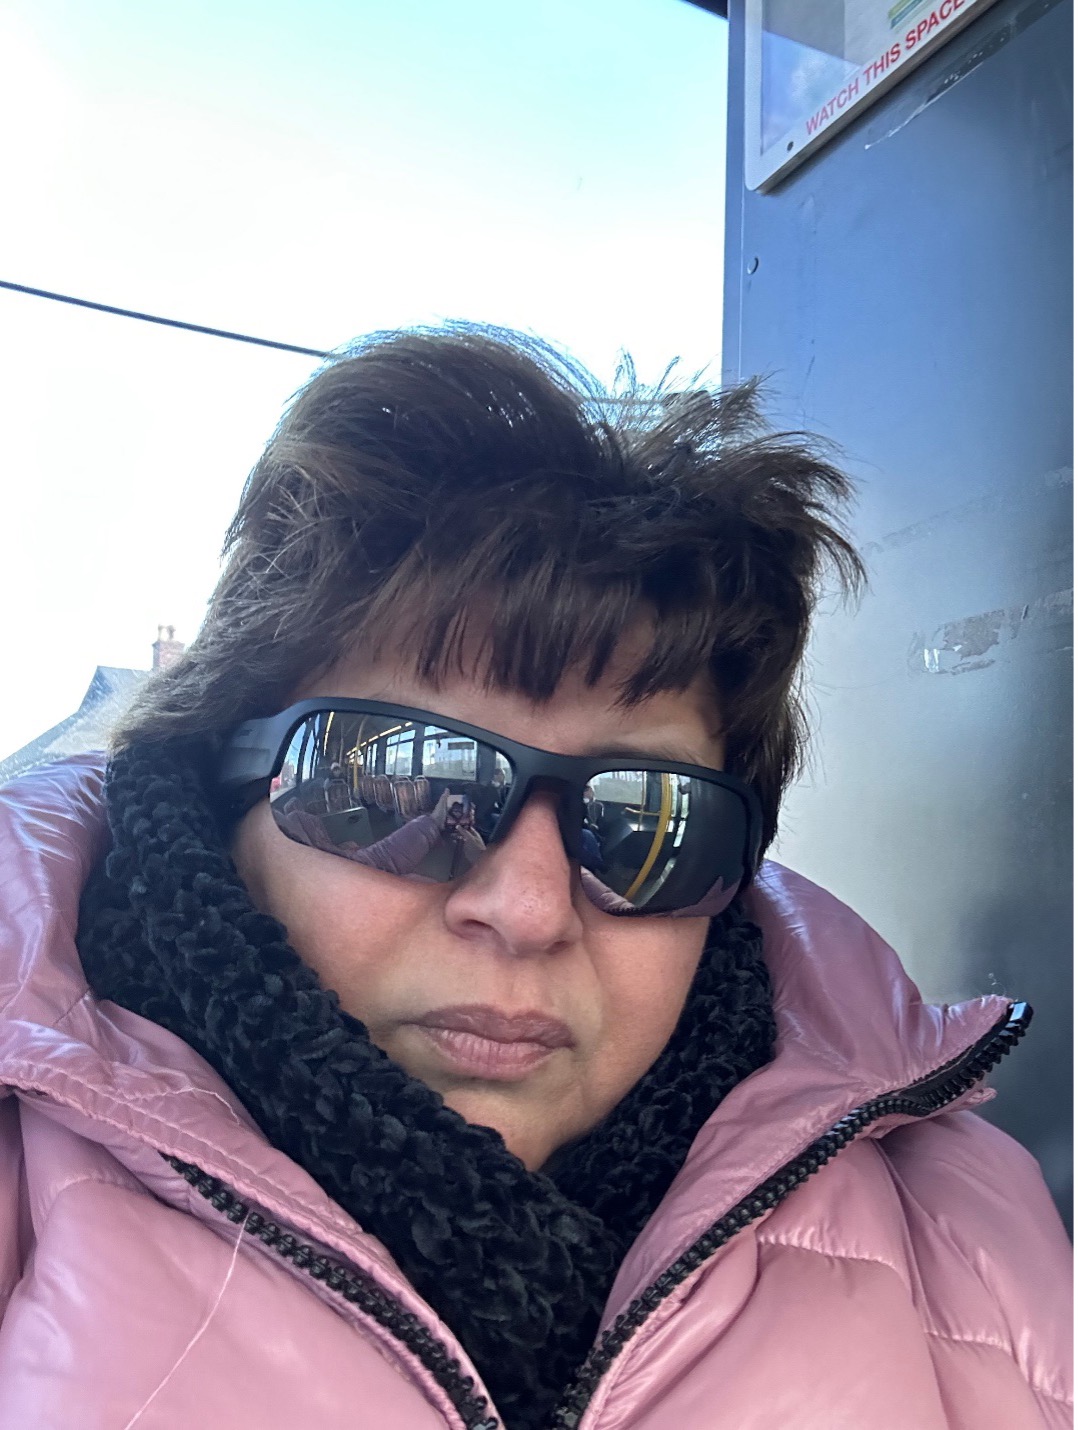 Marisa prend l’autobus. Elle porte des lunettes de soleil, un manteau d’hiver rose et une écharpe noire tricotée. L’intérieur d’un autobus se reflète dans ses lunettes de soleil.